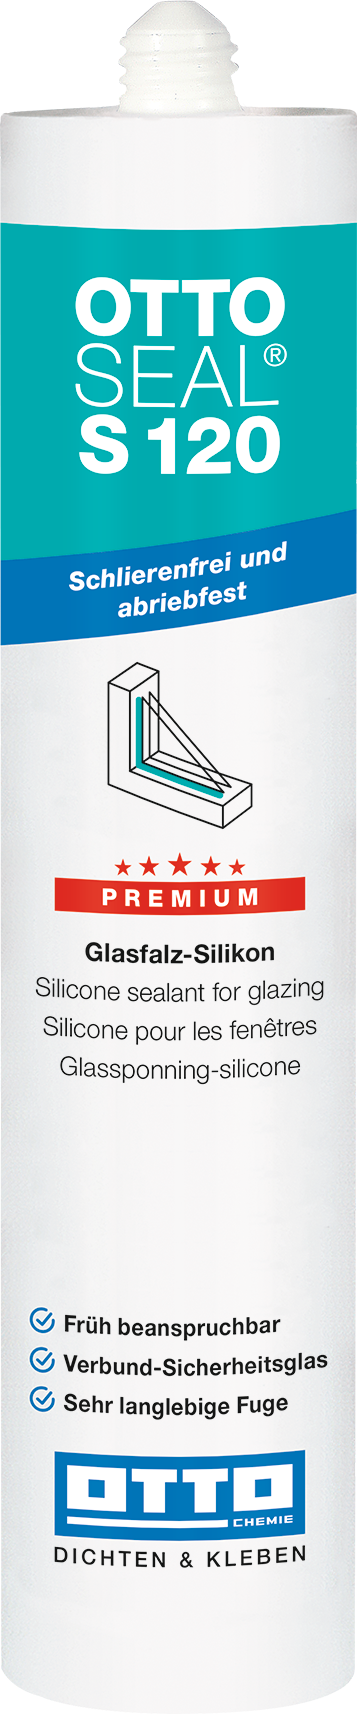 OTTOSEAL® S120 Das Premium-Glasfalz-Silikon 310 ml